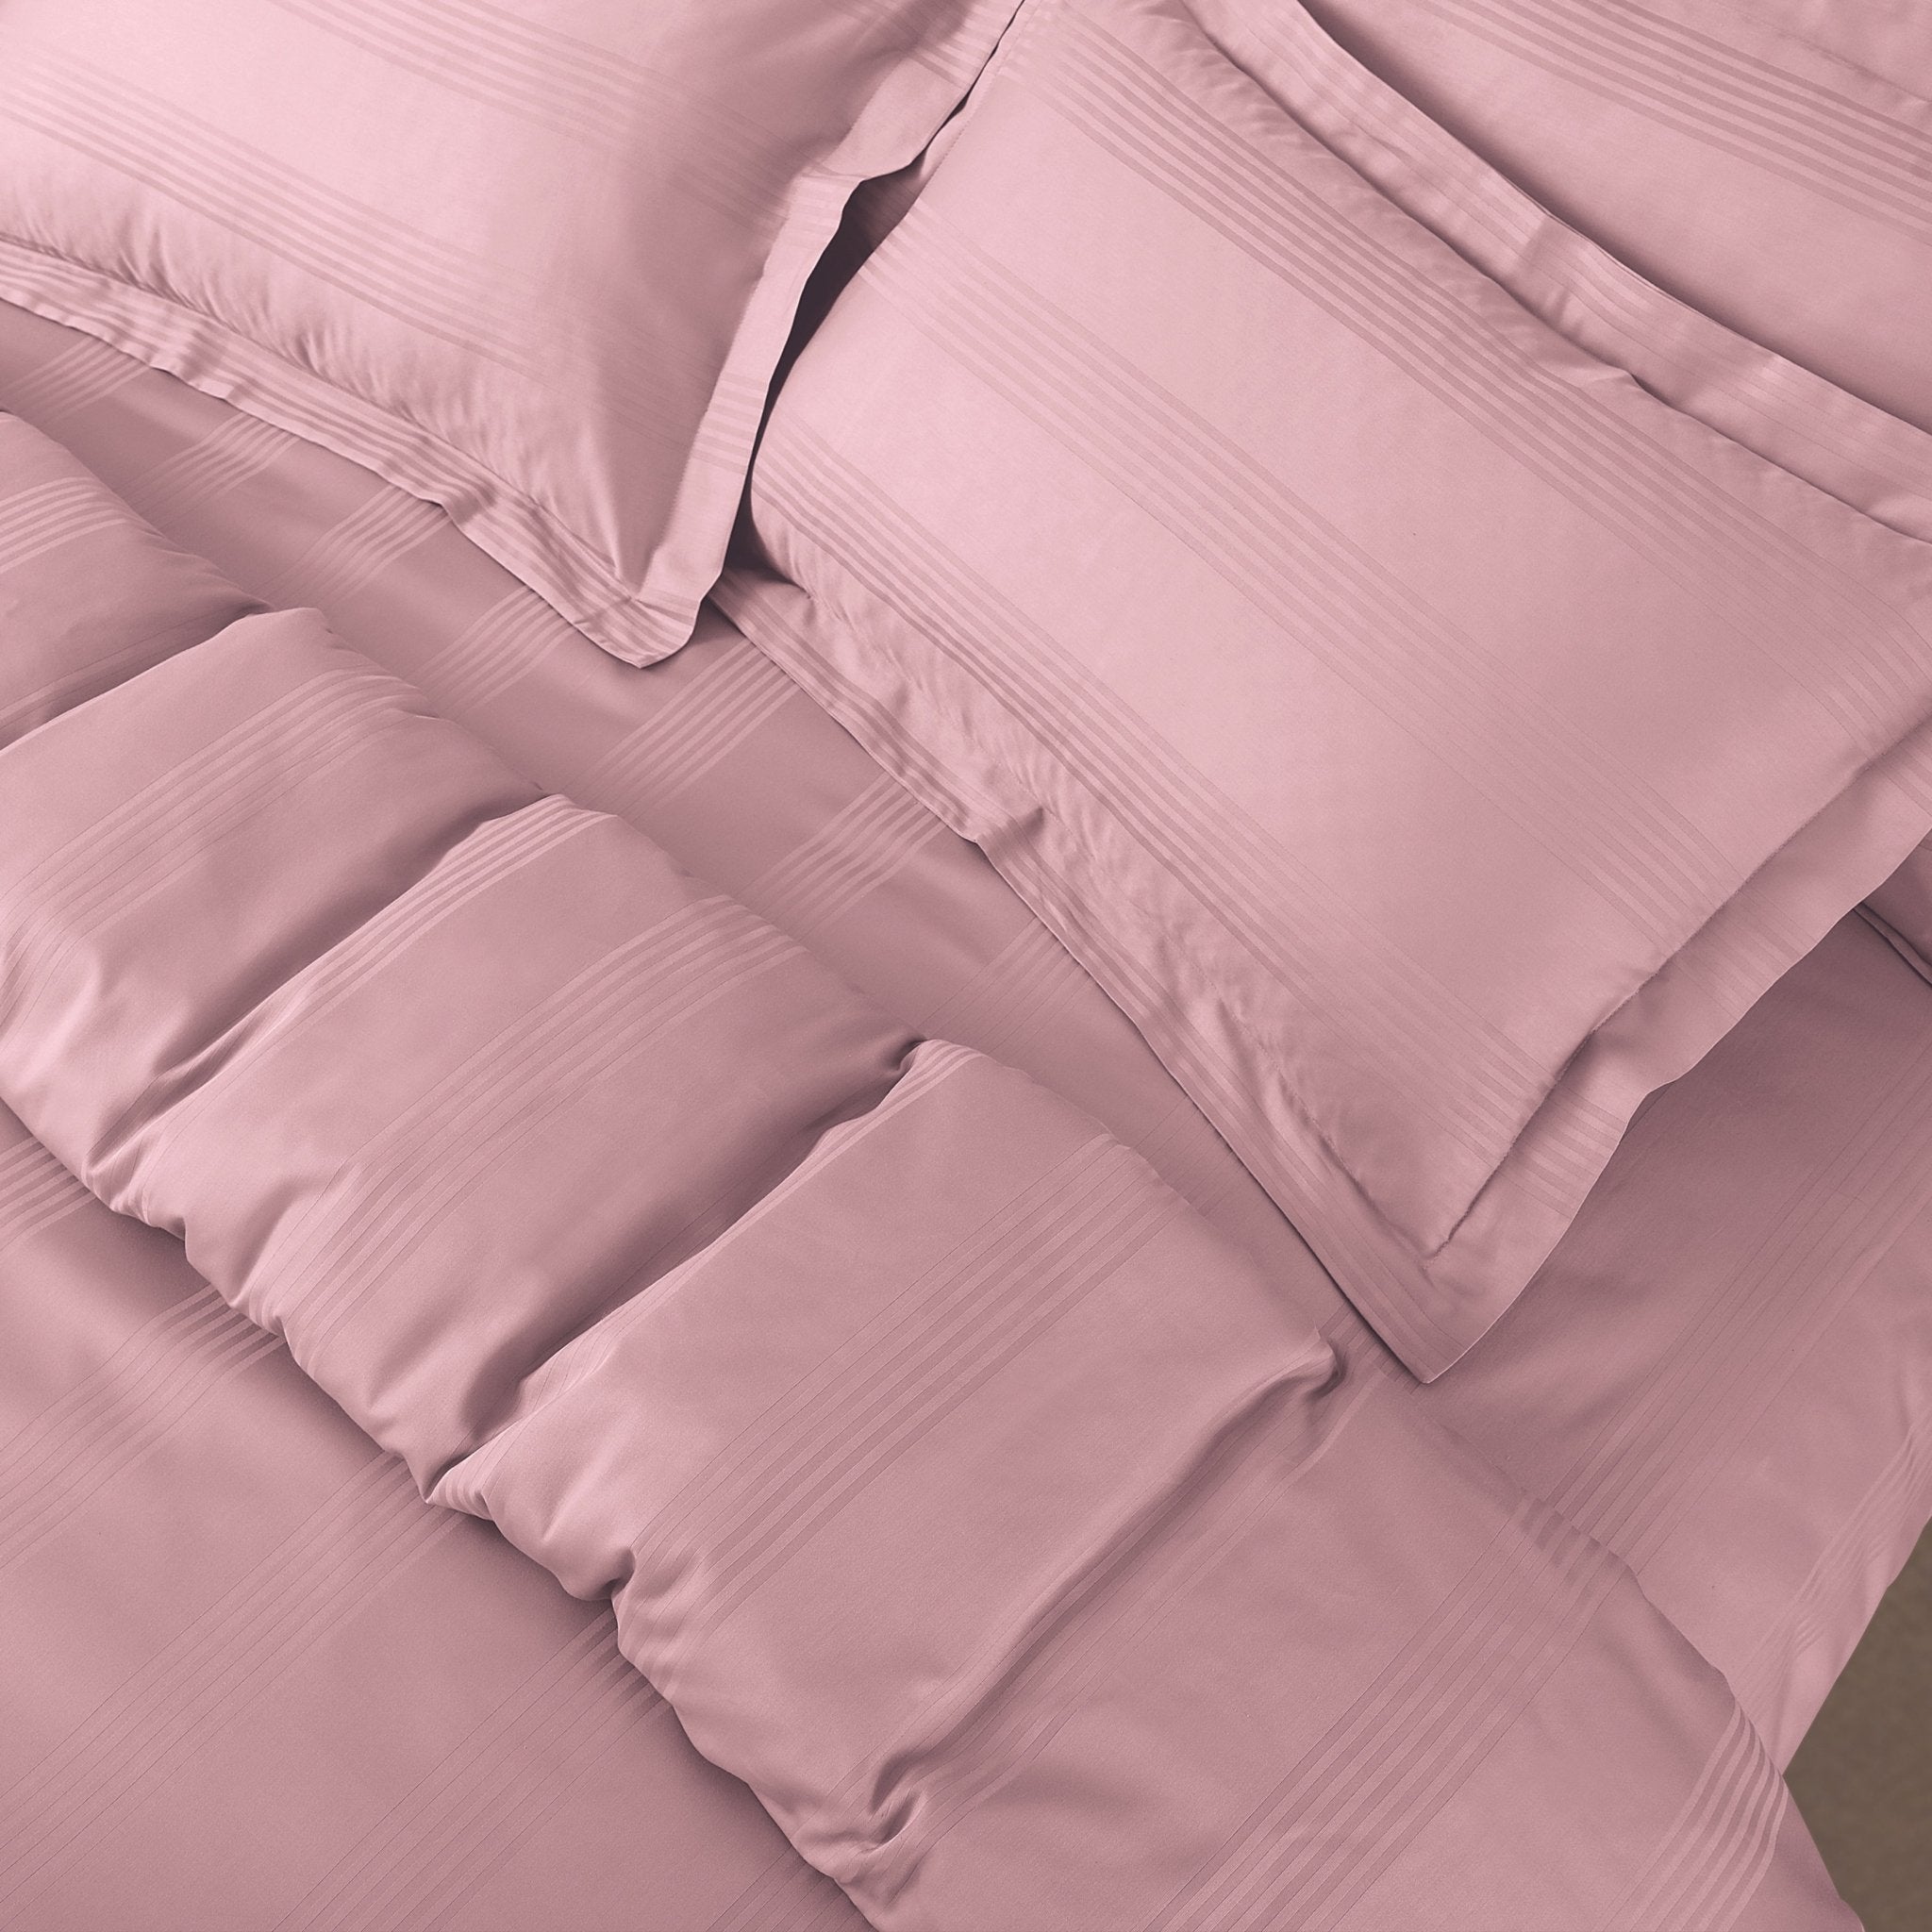 Malako Turin Jacquard Stripes 500 TC 100% Cotton King Size Bed Sheets/Duvet Covers - MALAKO